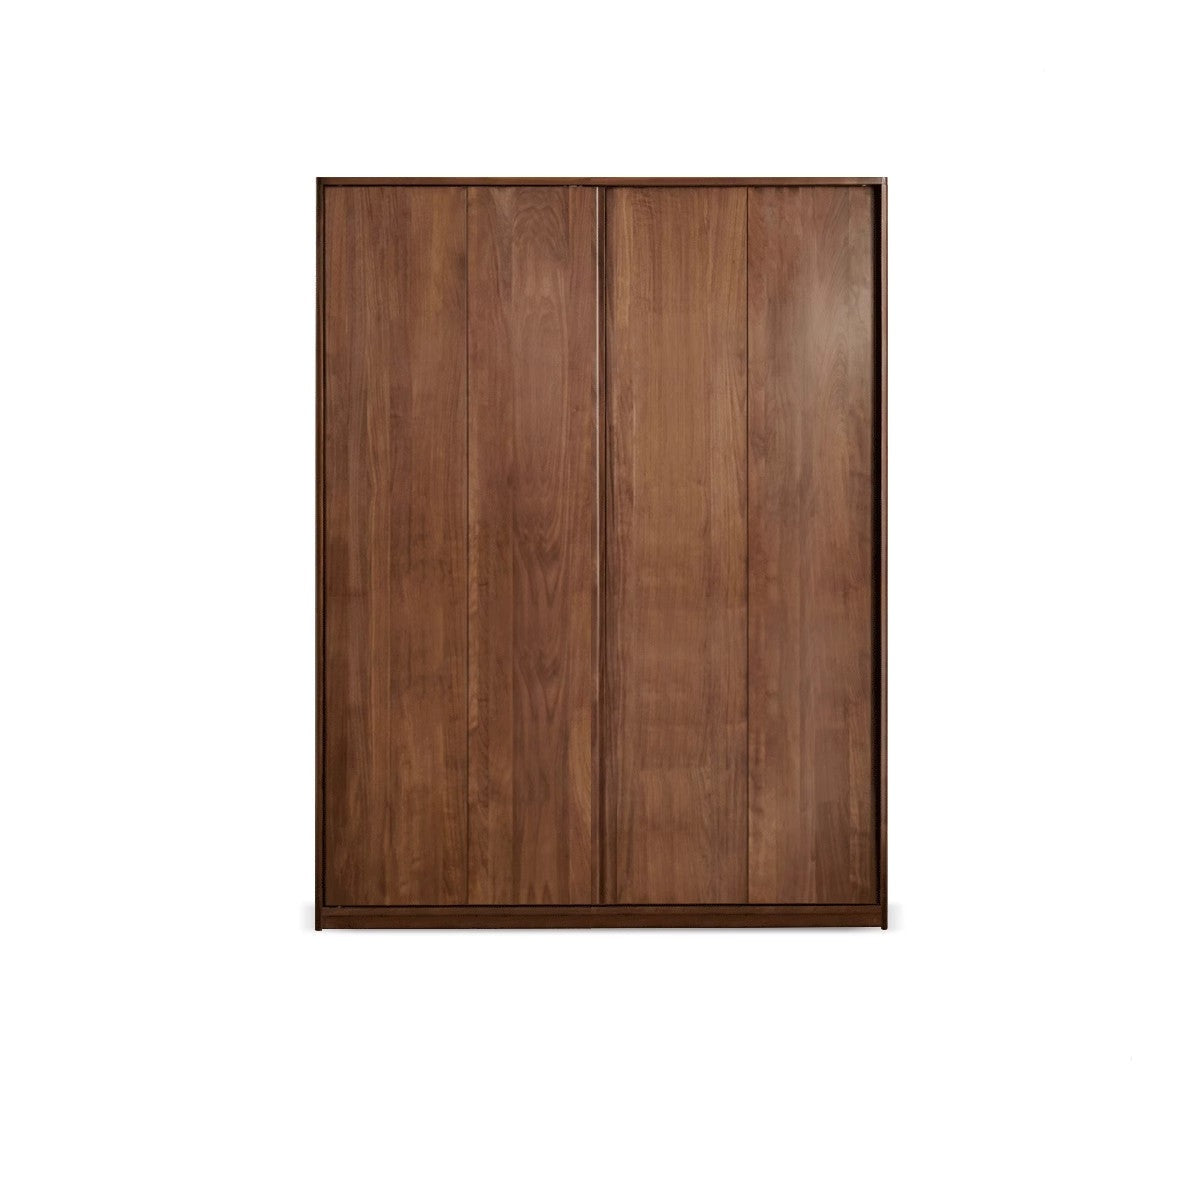 Black Walnut solid wood sliding door wardrobe-